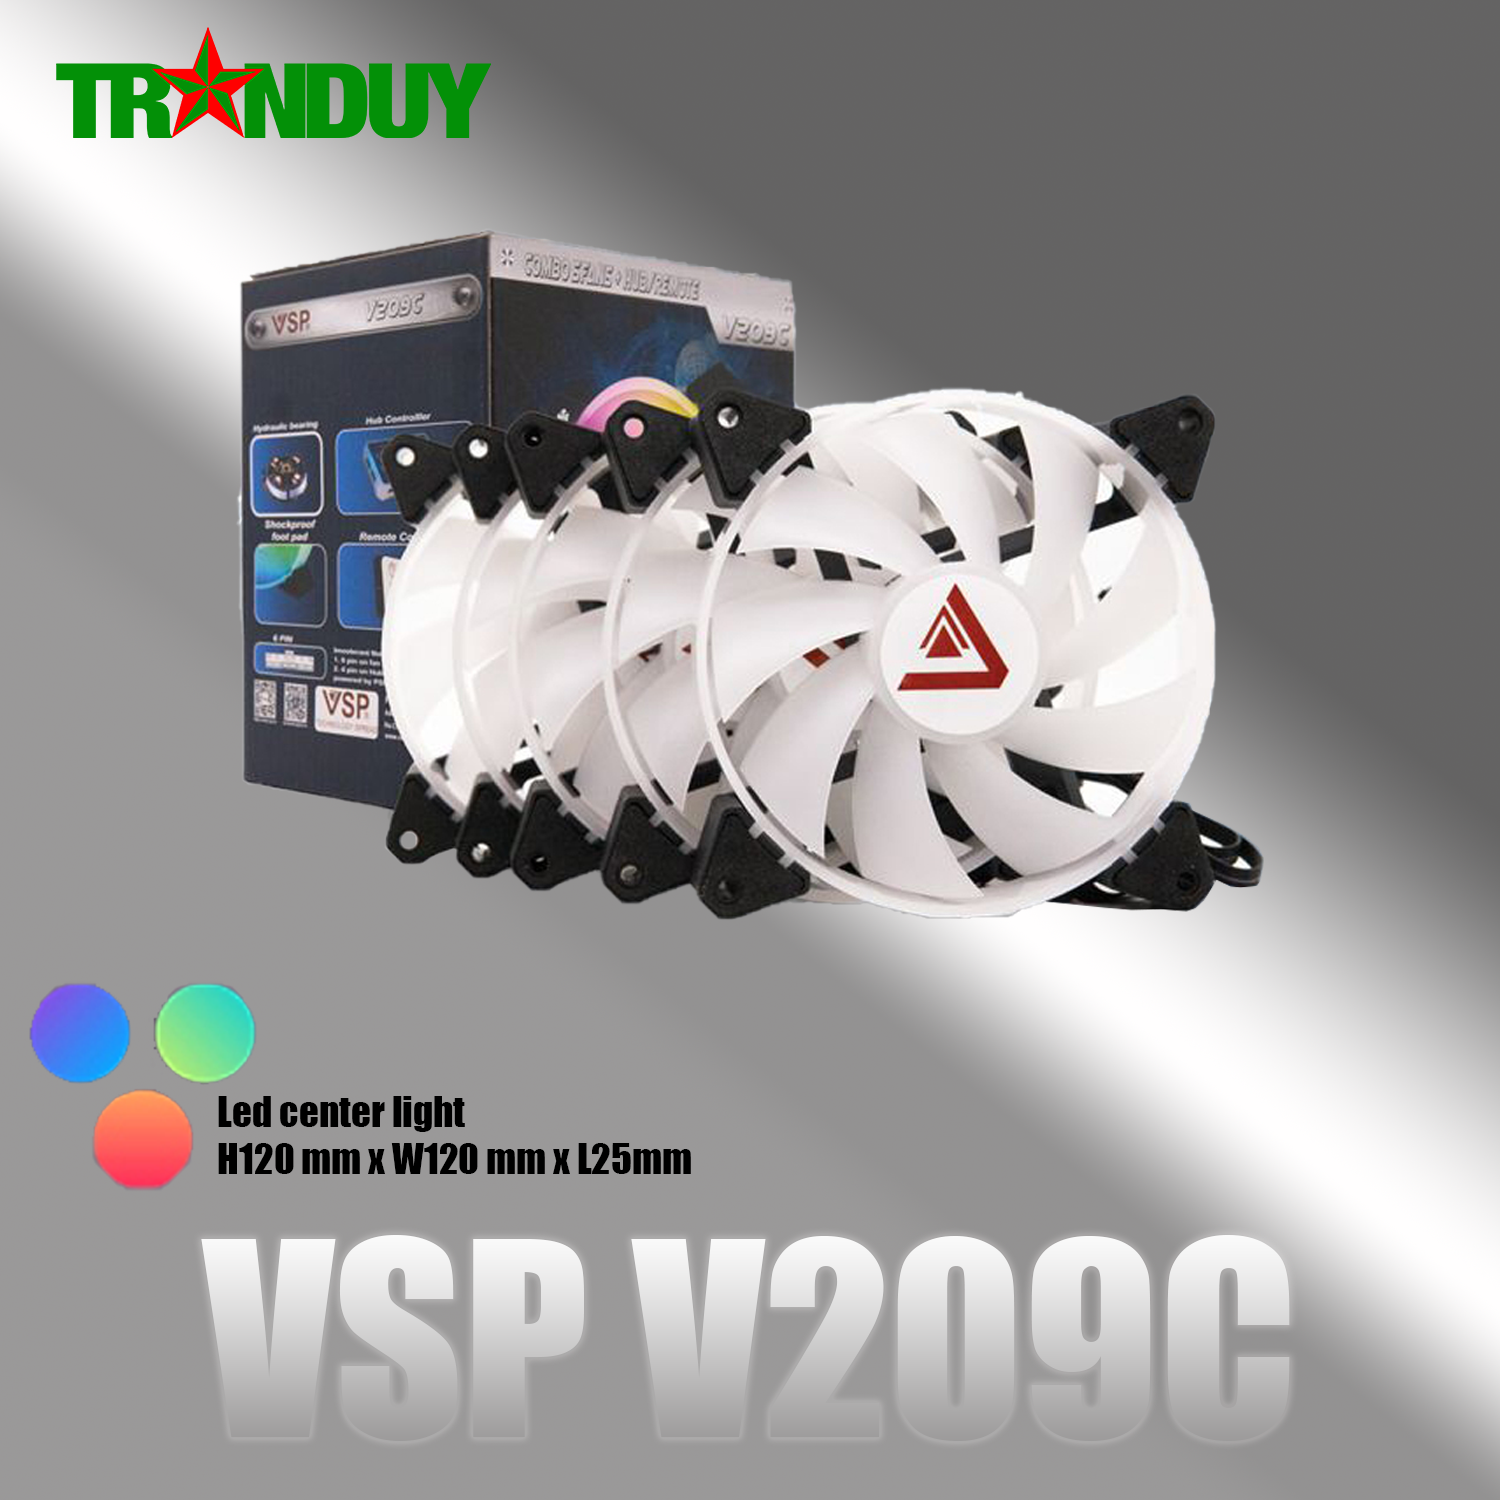 Bộ Kit 5 Fan V209C LED ARGB